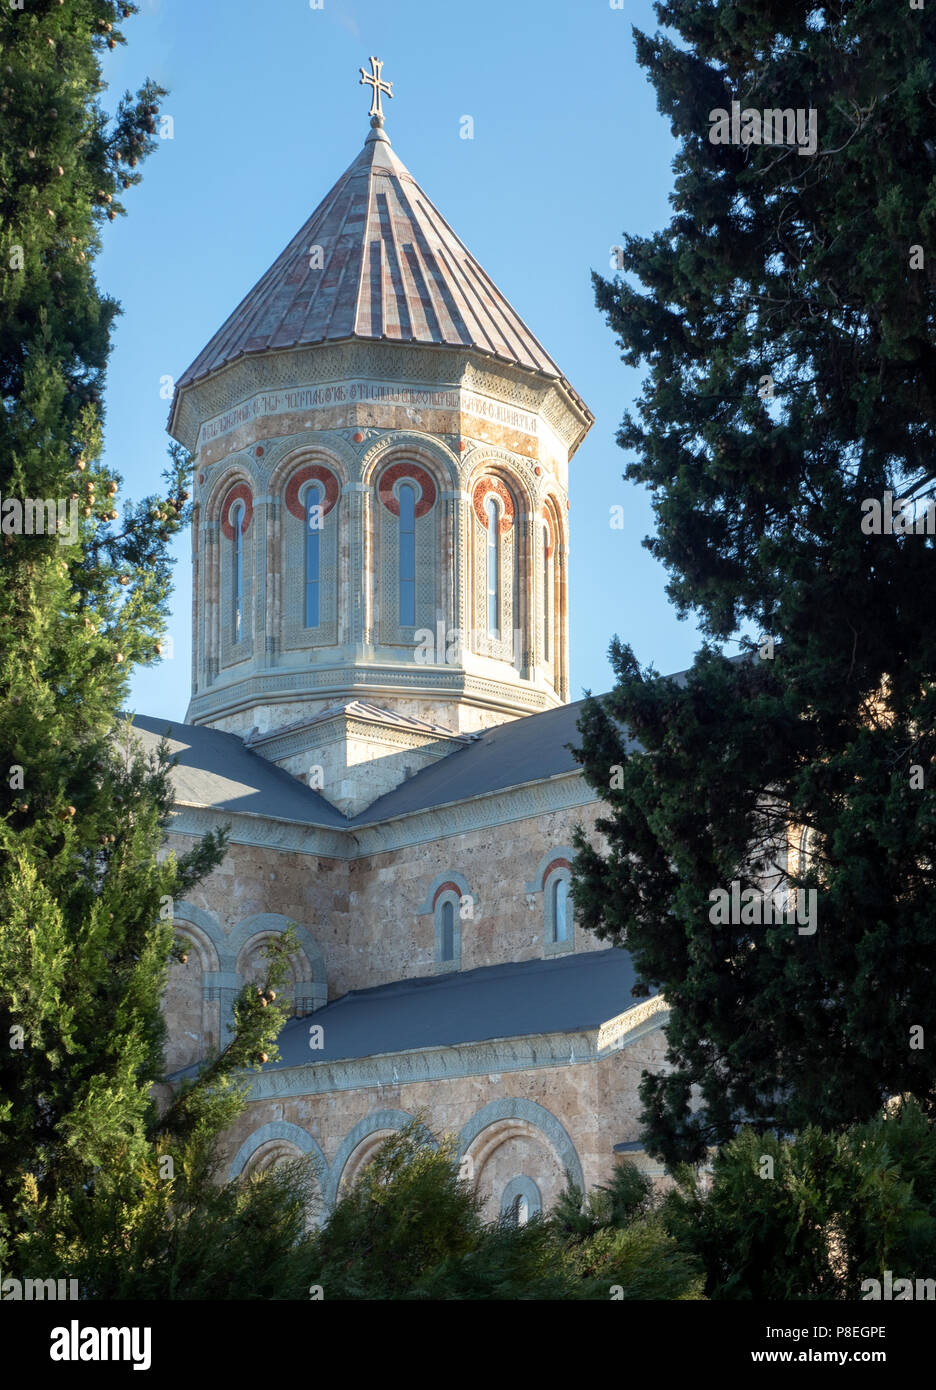 St. Nino klosterturm an Bodbe, eine Georgische Orthodoxe Klosteranlage befindet sich 2 km von der Stadt Sighnaghi, Kachetien, Georgia. Stockfoto